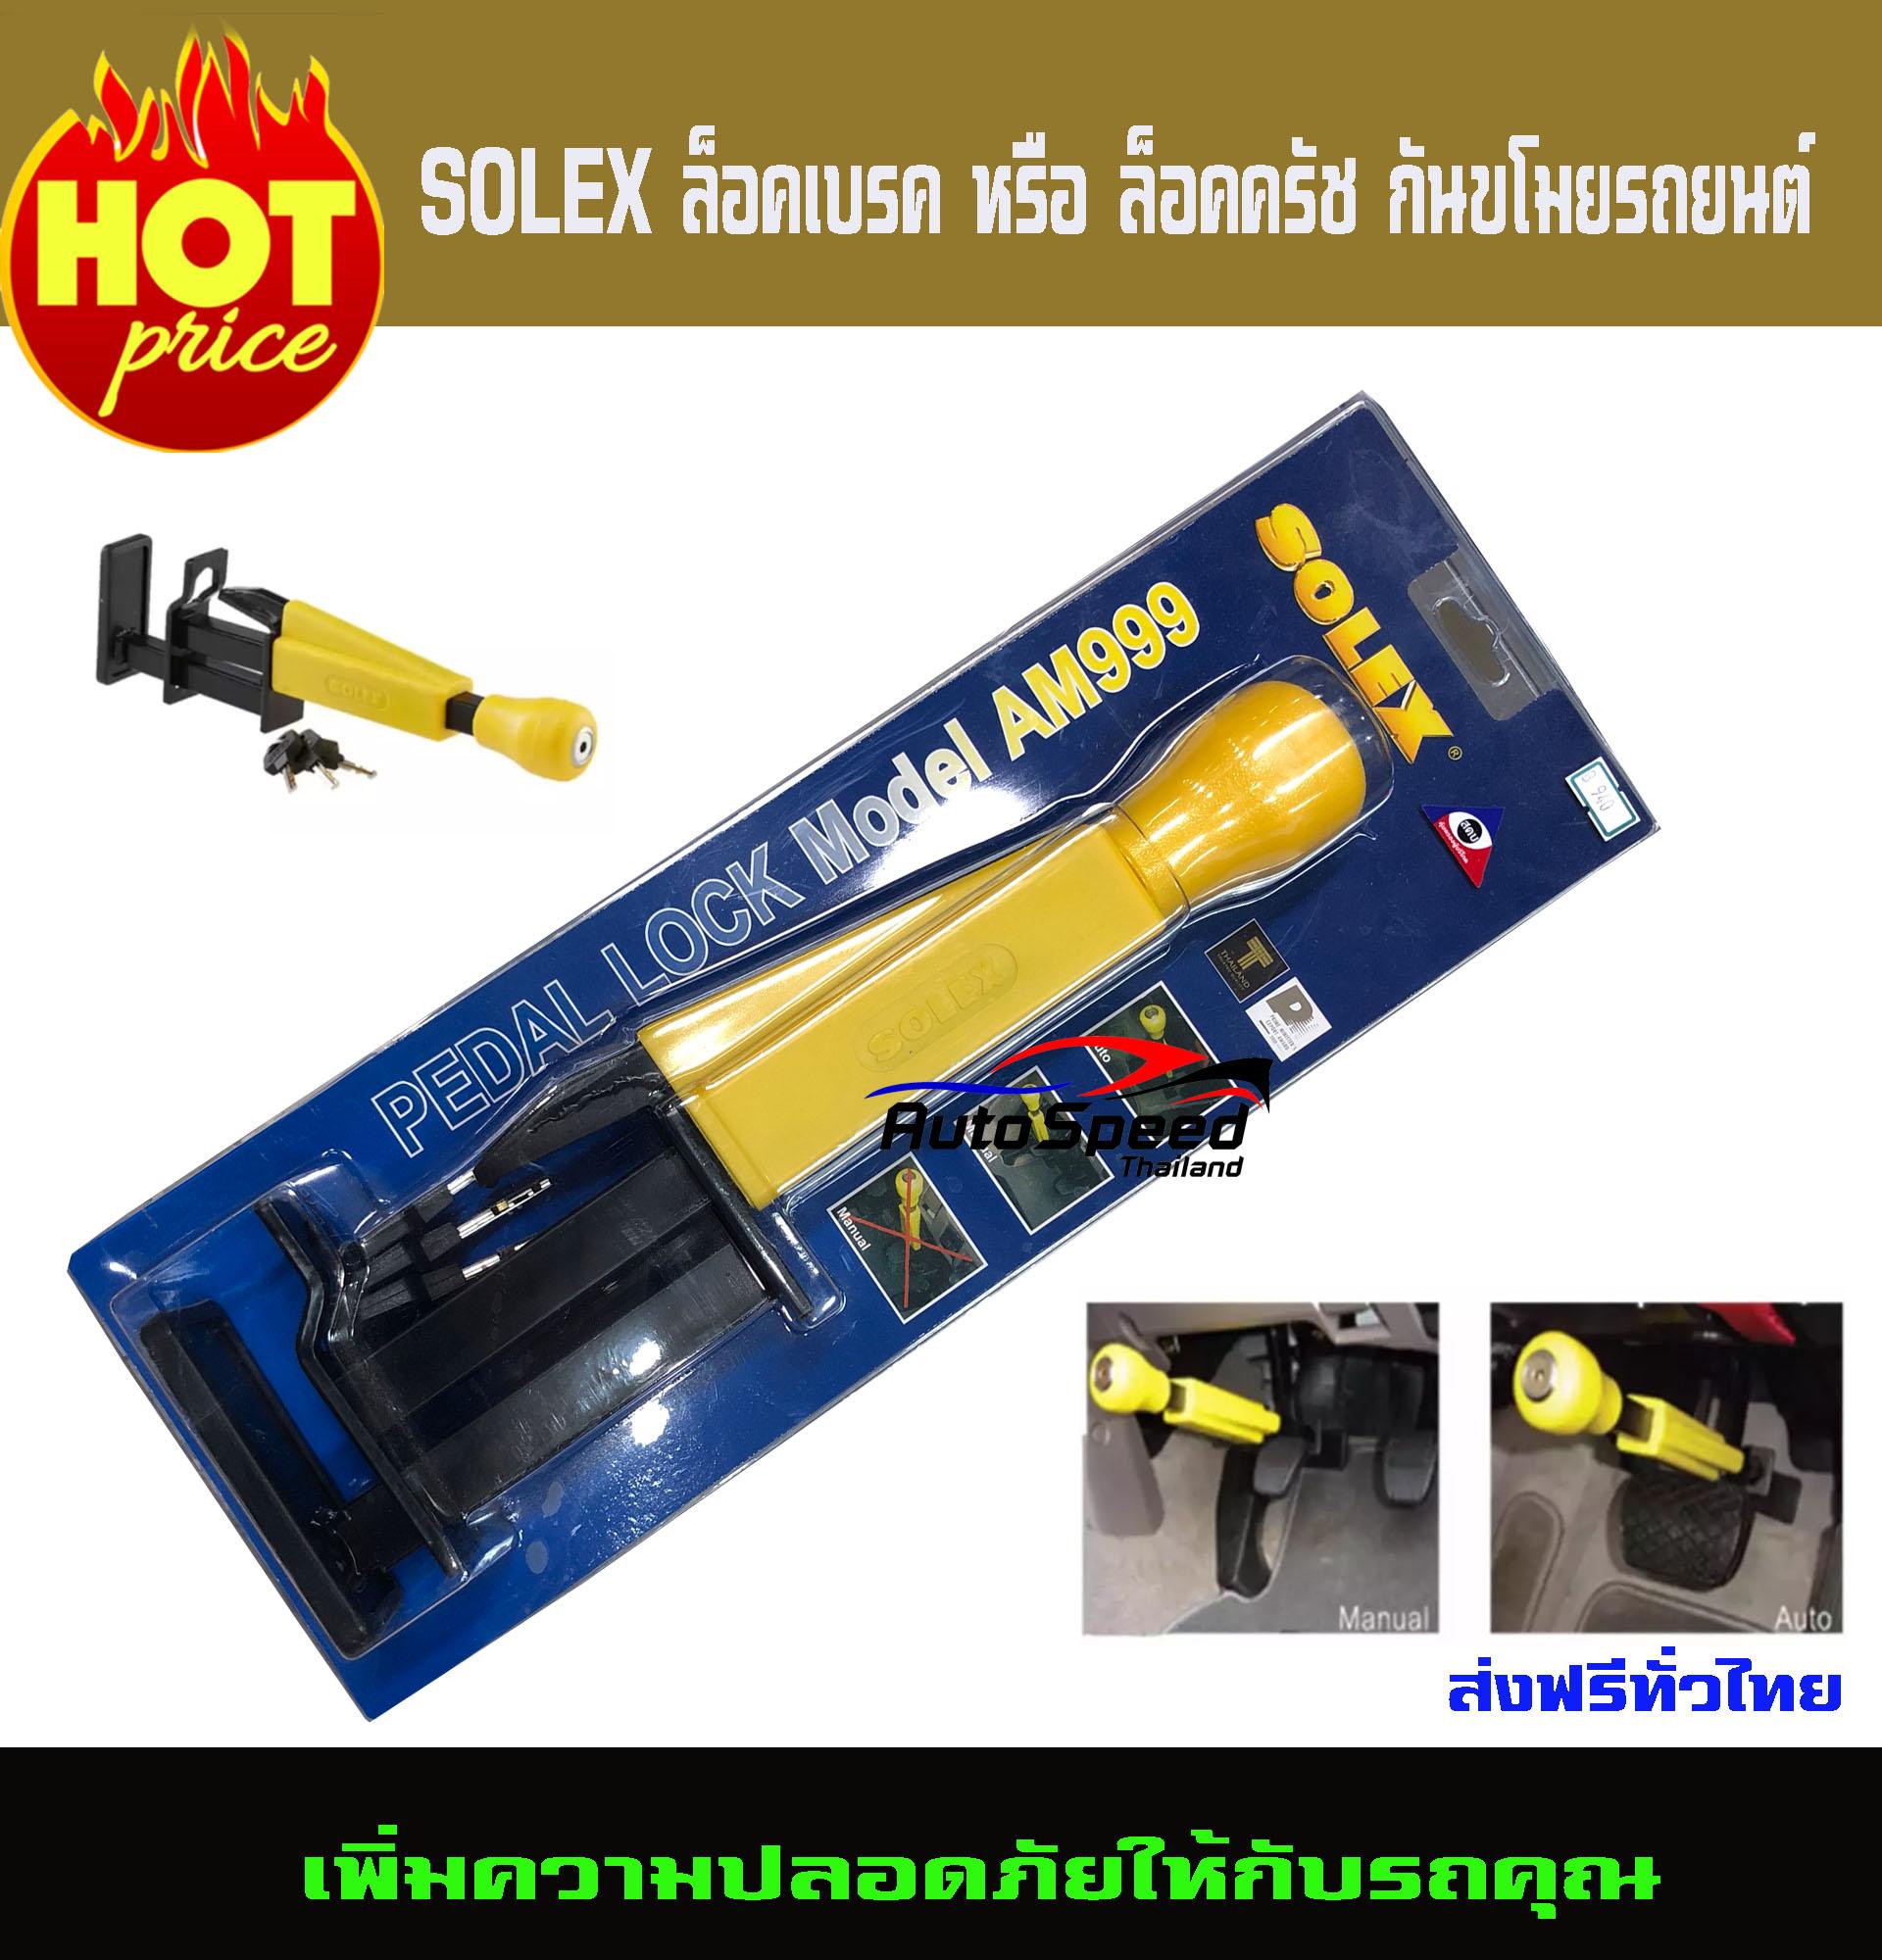 SOLEX ล็อคเบรค หรือ ล็อคครัช กันขโมยรถยนต์ รุ่น AM999 (Yellow/Black)